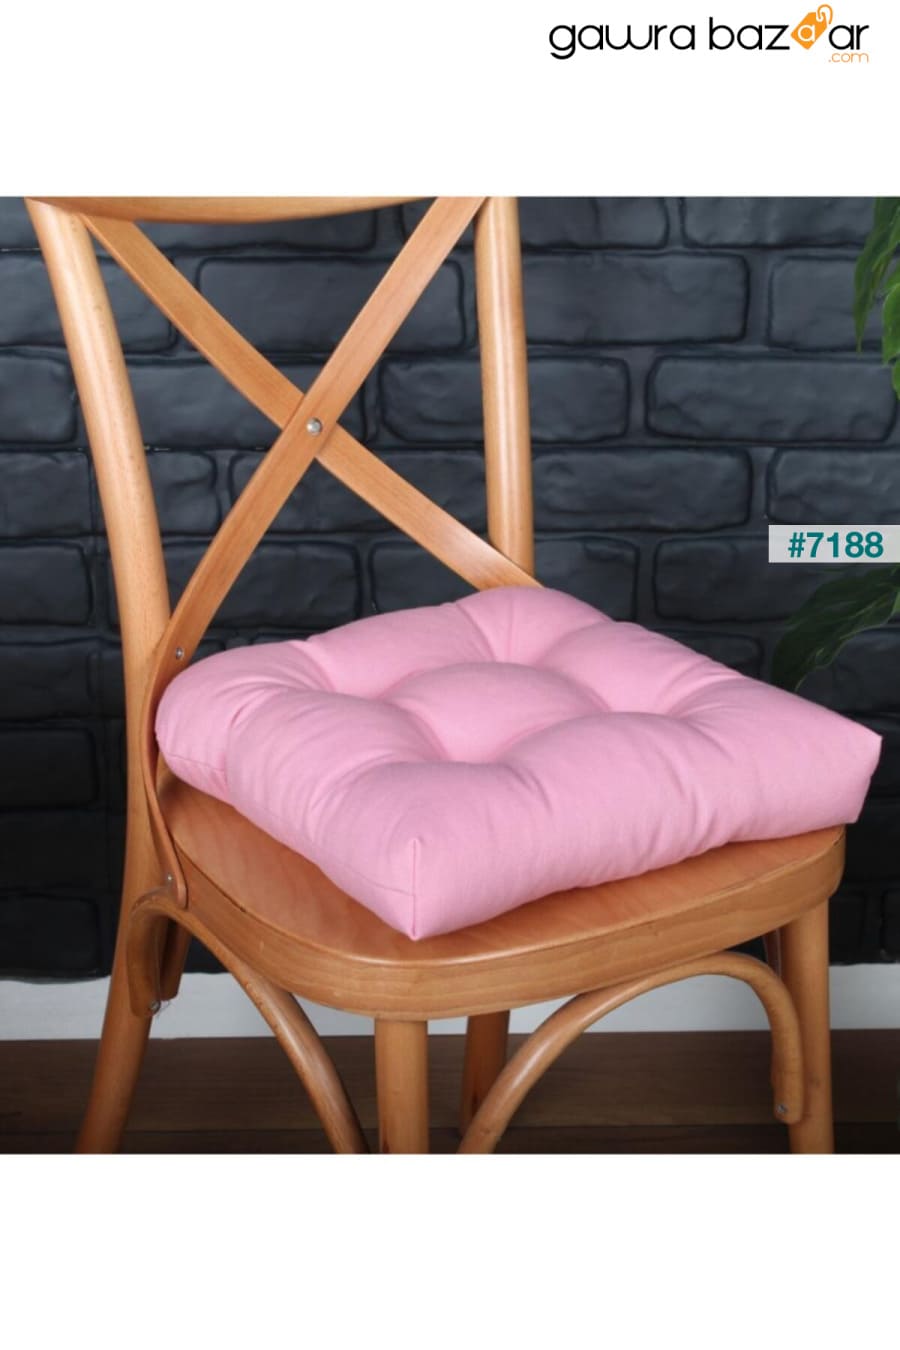 وسادة كرسي Pofidik باللون الوردي الذهبي ، مخيط خاص 40x40 سم ALTINPAMUK 1